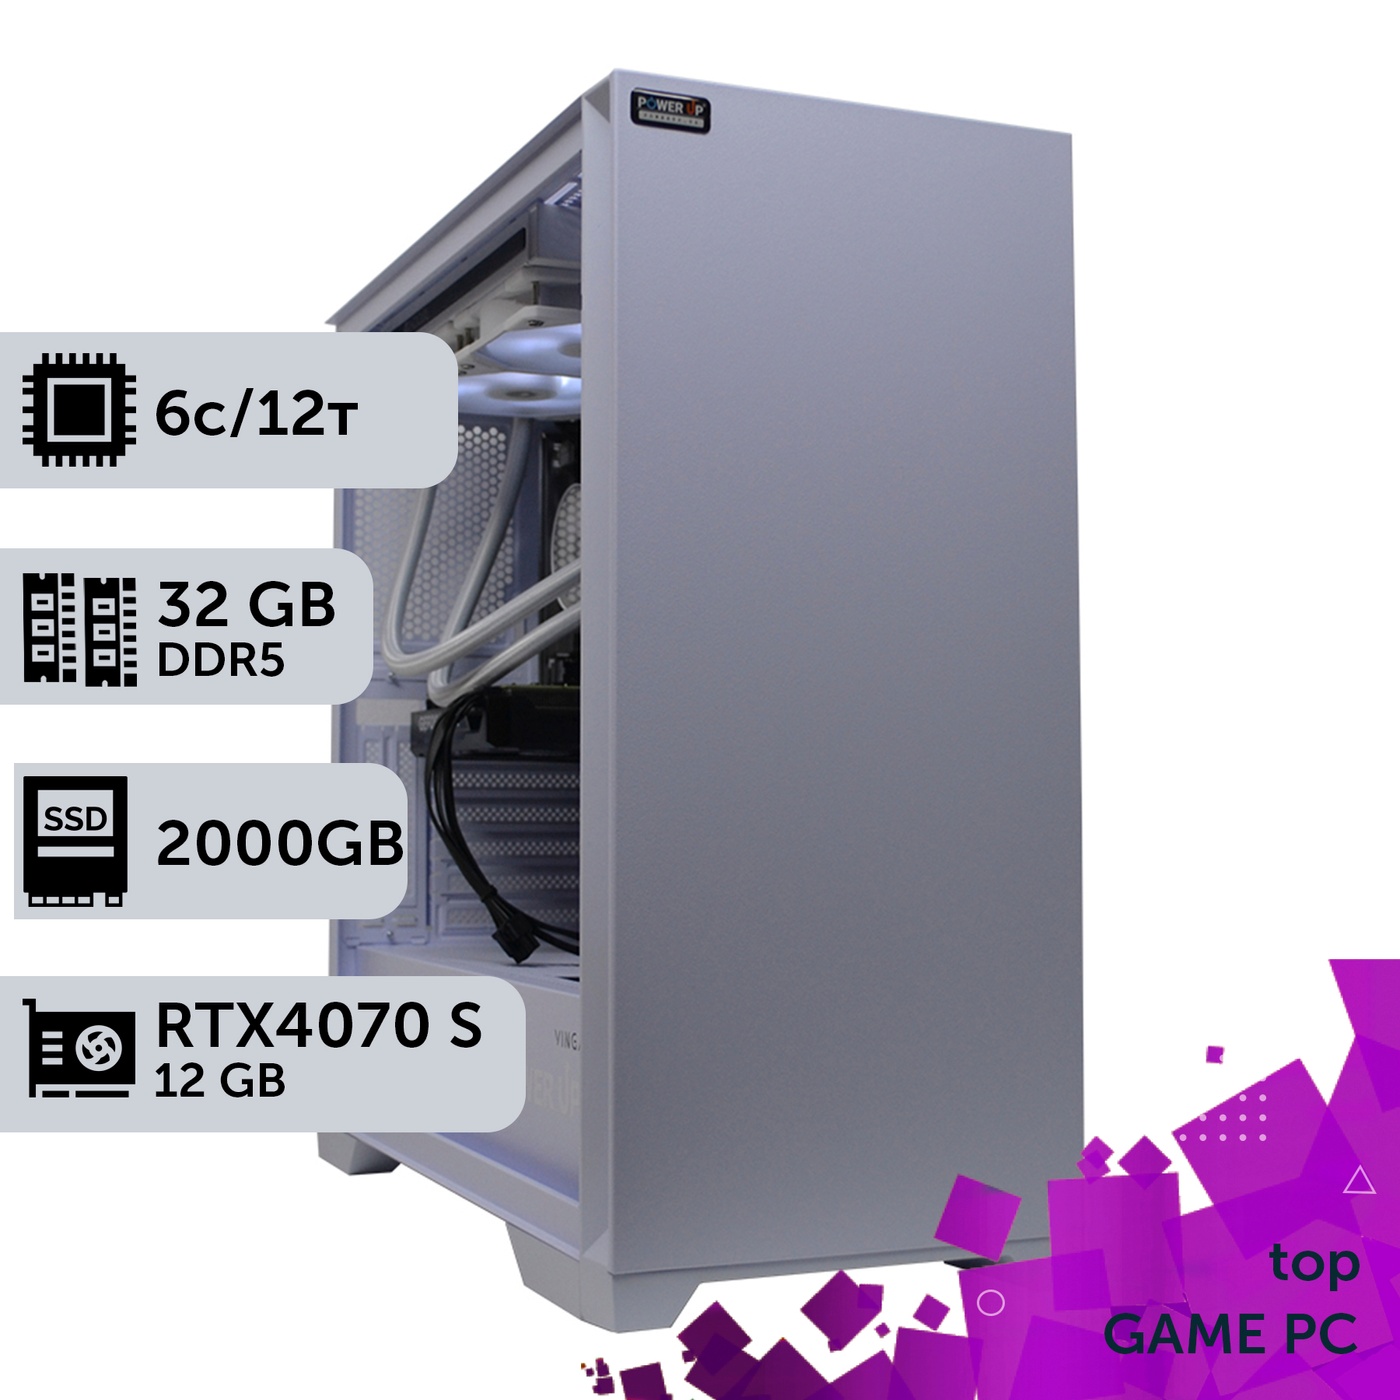 Ігровий комп'ютер GamePC TOP #363 Ryzen 5 7600/32 GB/SSD 2TB/GeForce RTX 4070 Super 12GB